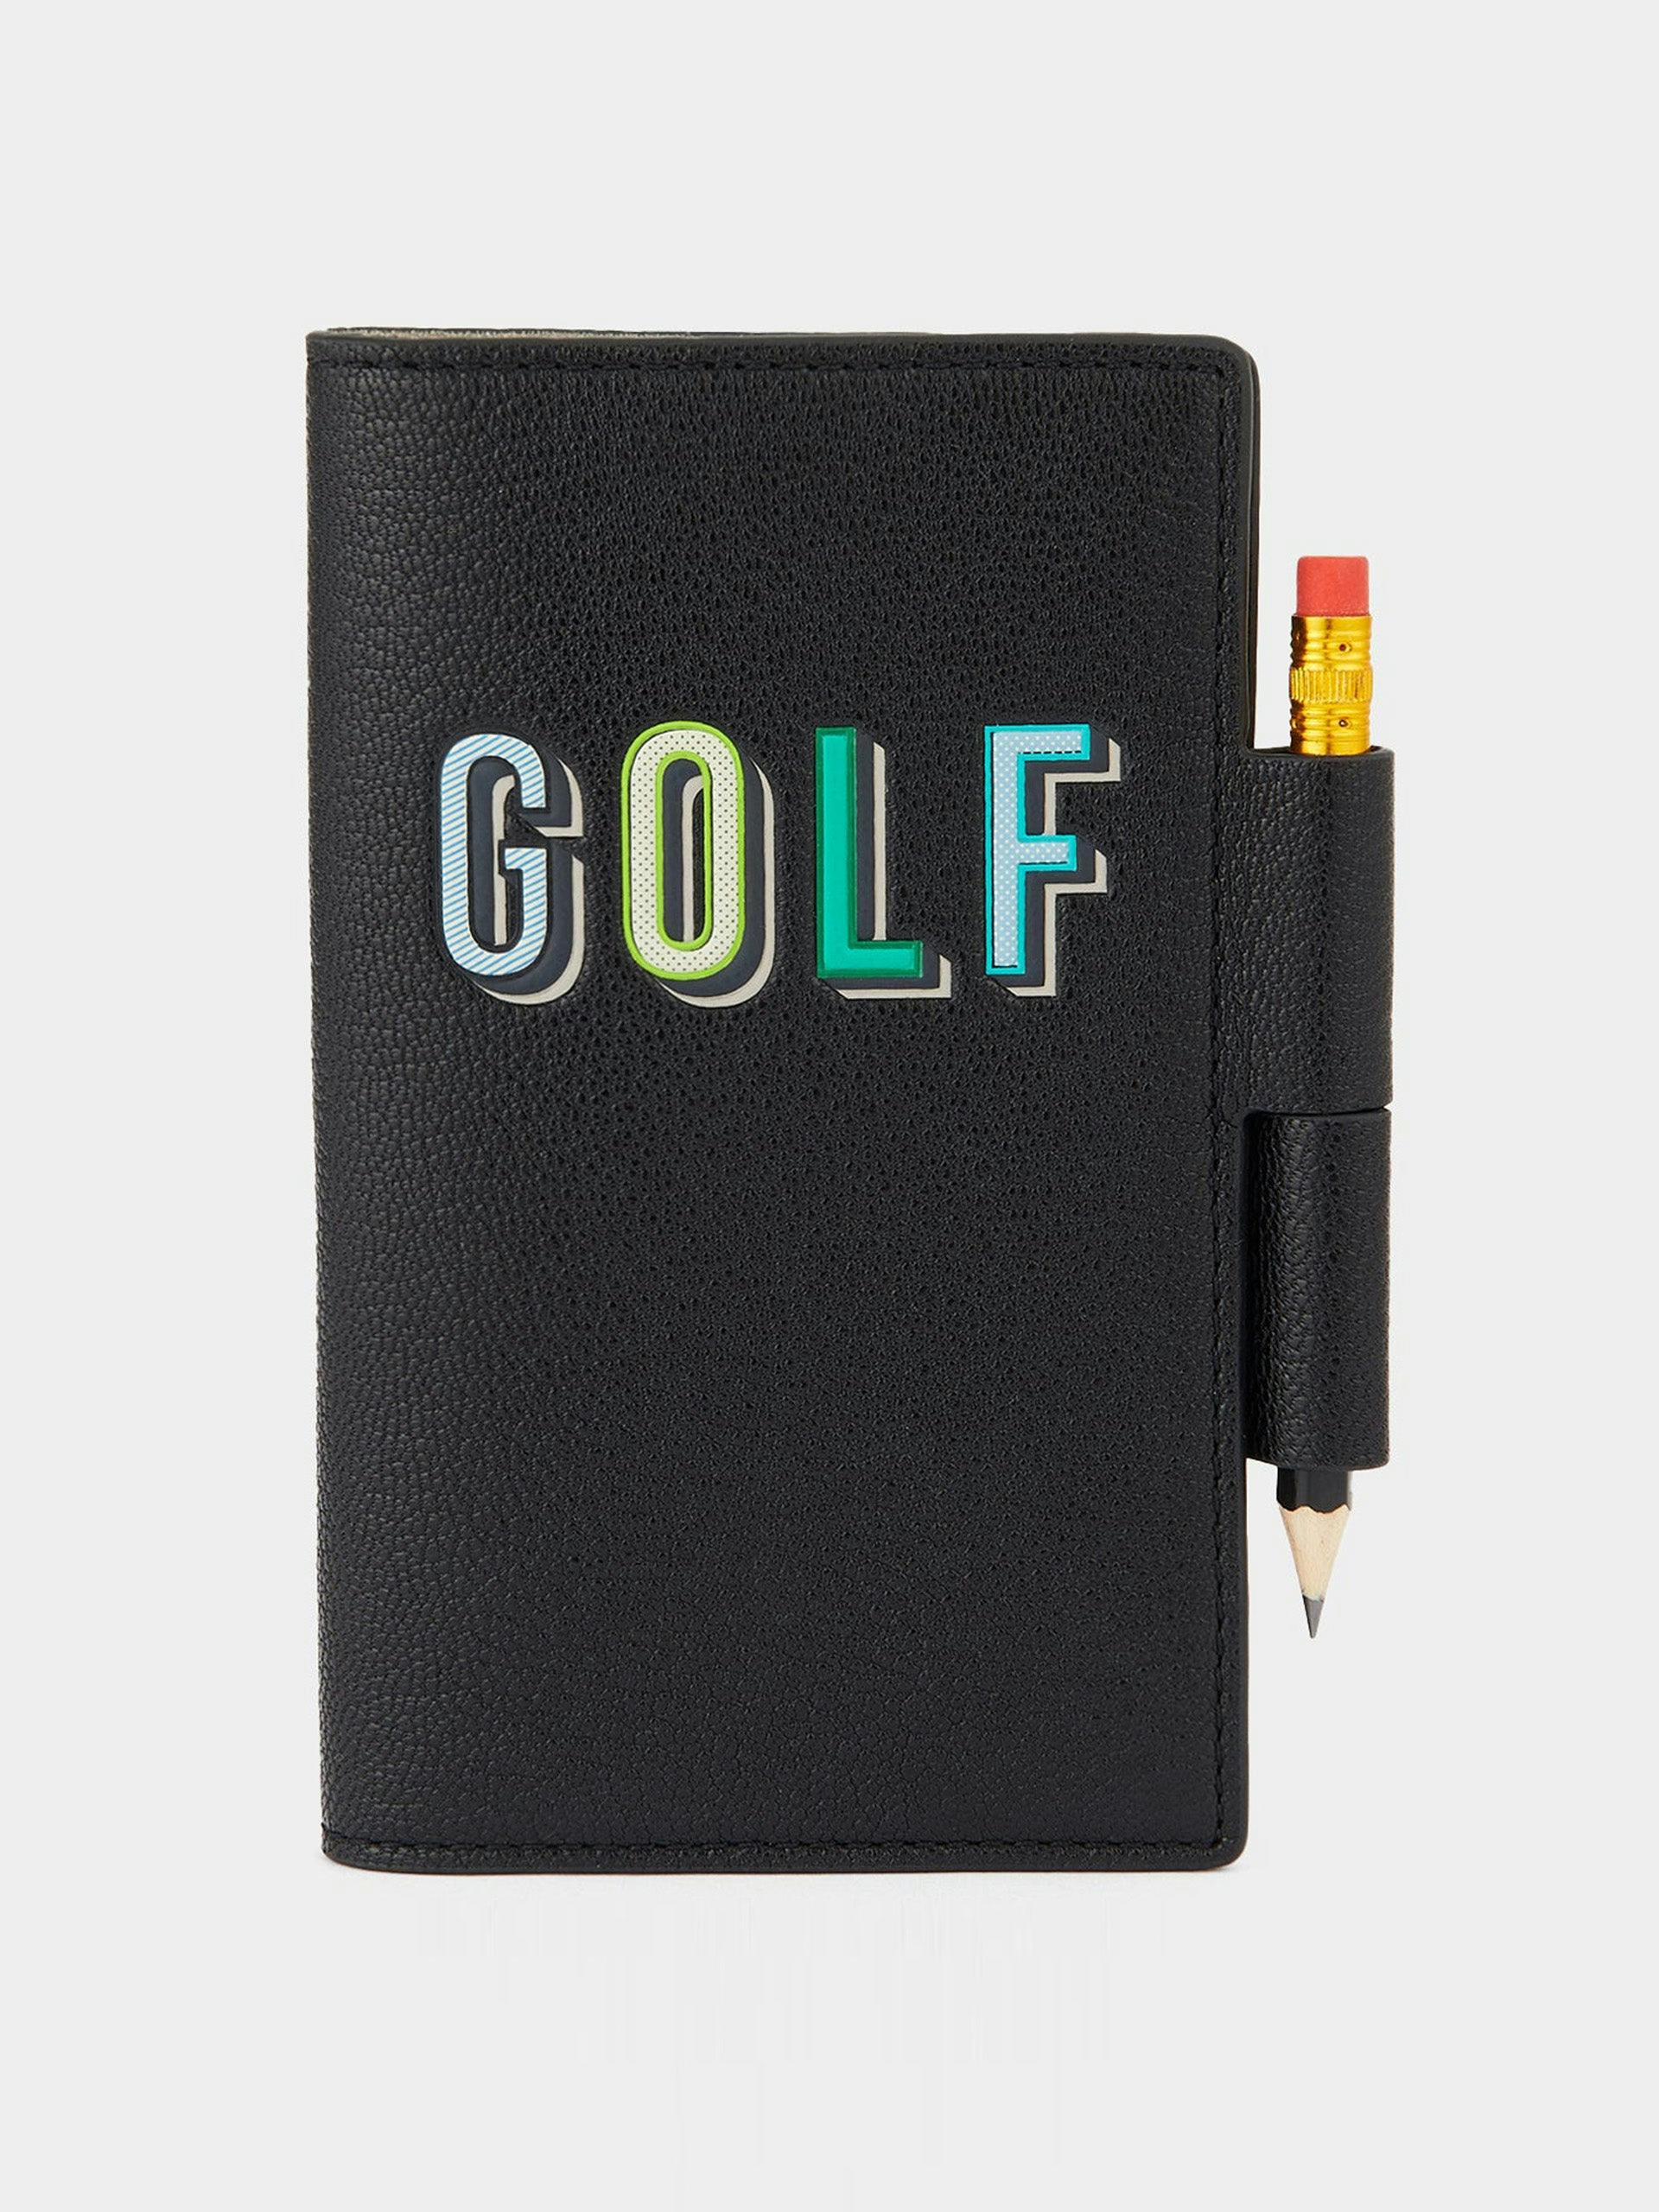 Golf score card